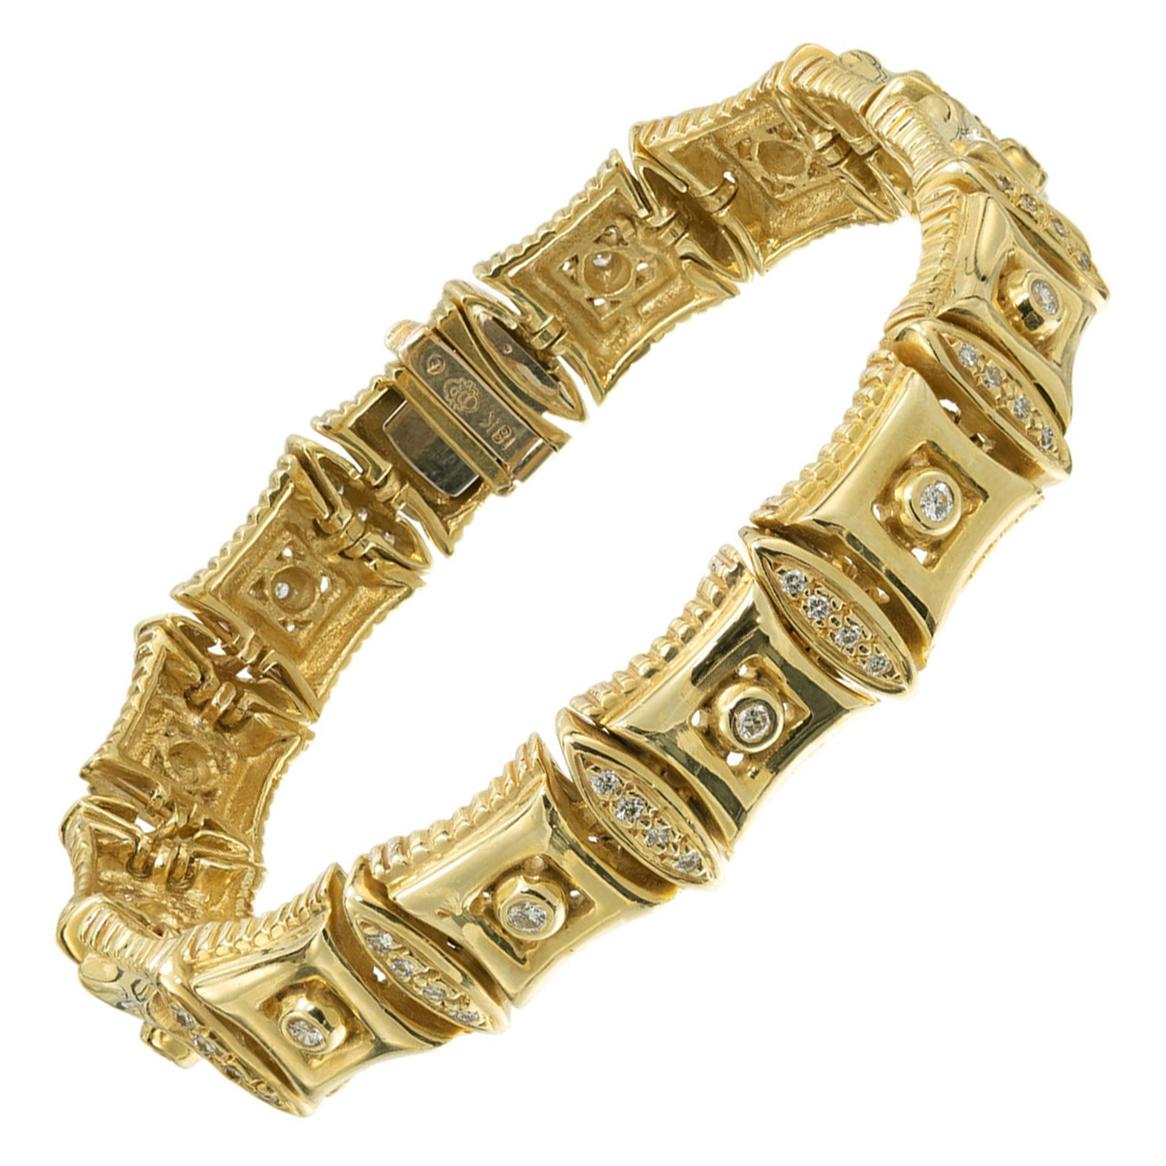 Doris Panos 1.00 Carat Diamond Yellow Gold Link Bracelet